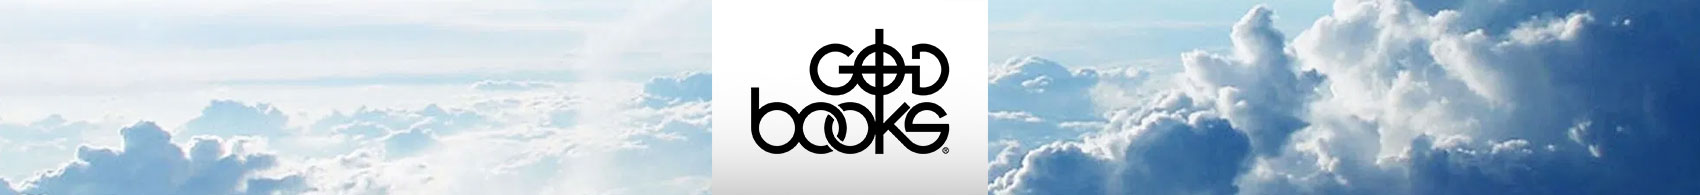 GodBooks 